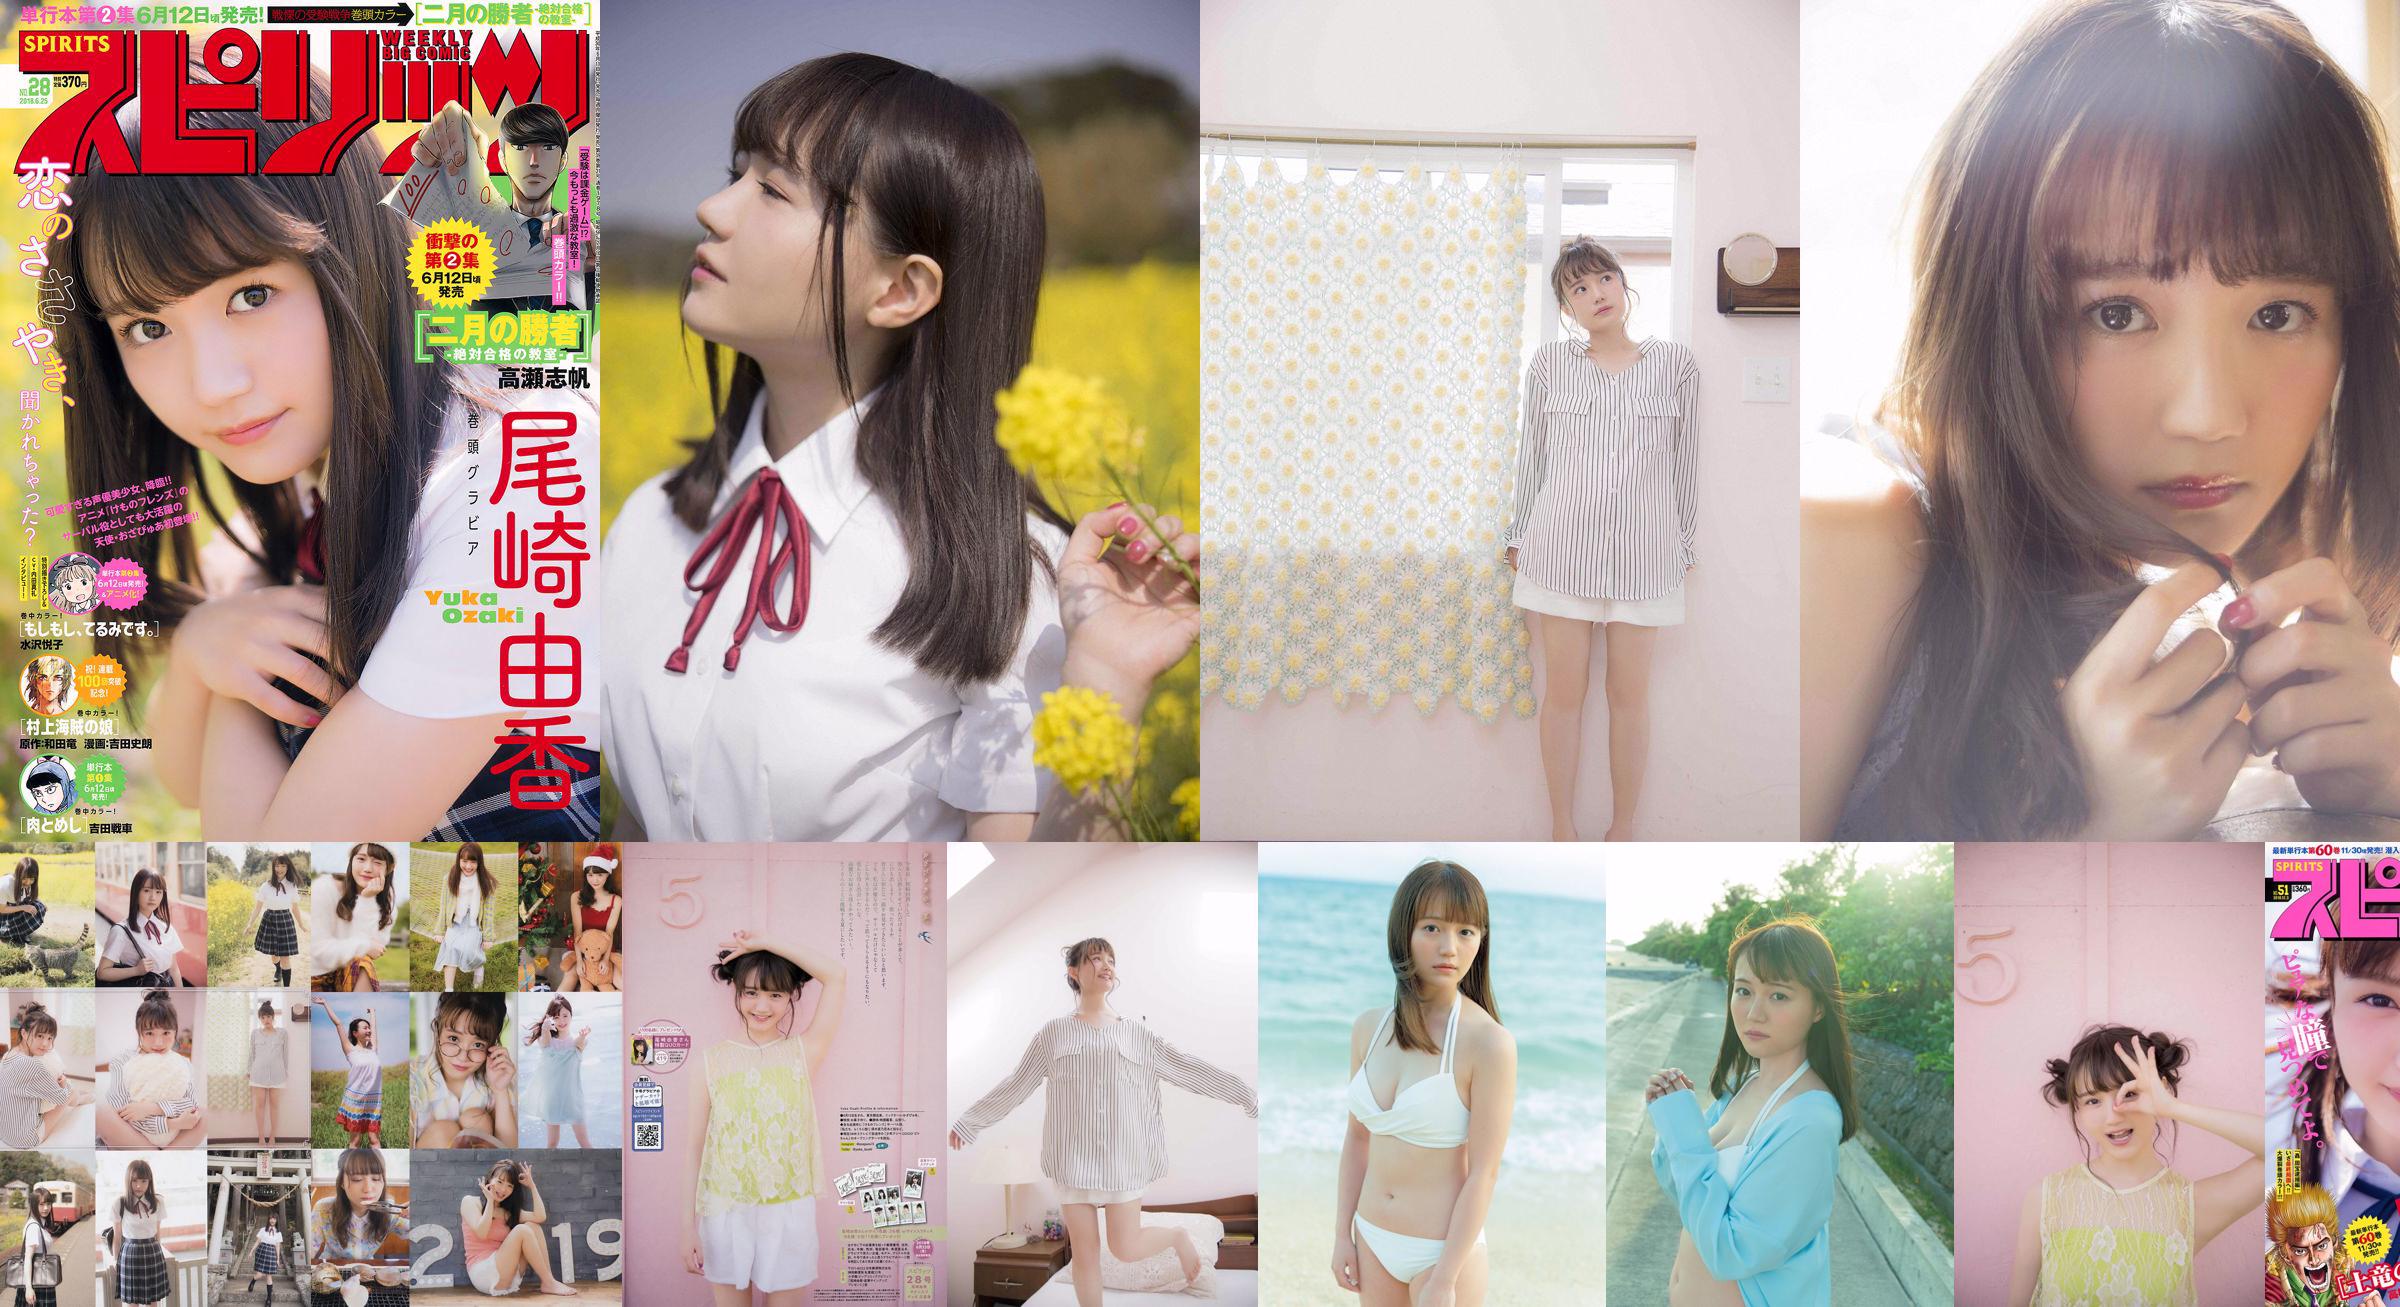 [SEXTA-FEIRA] Yuka Ozaki "A dubladora do personagem principal do anime" Kemono Friends "agora está em um biquíni branco" Foto No.2c9b92 Página 3